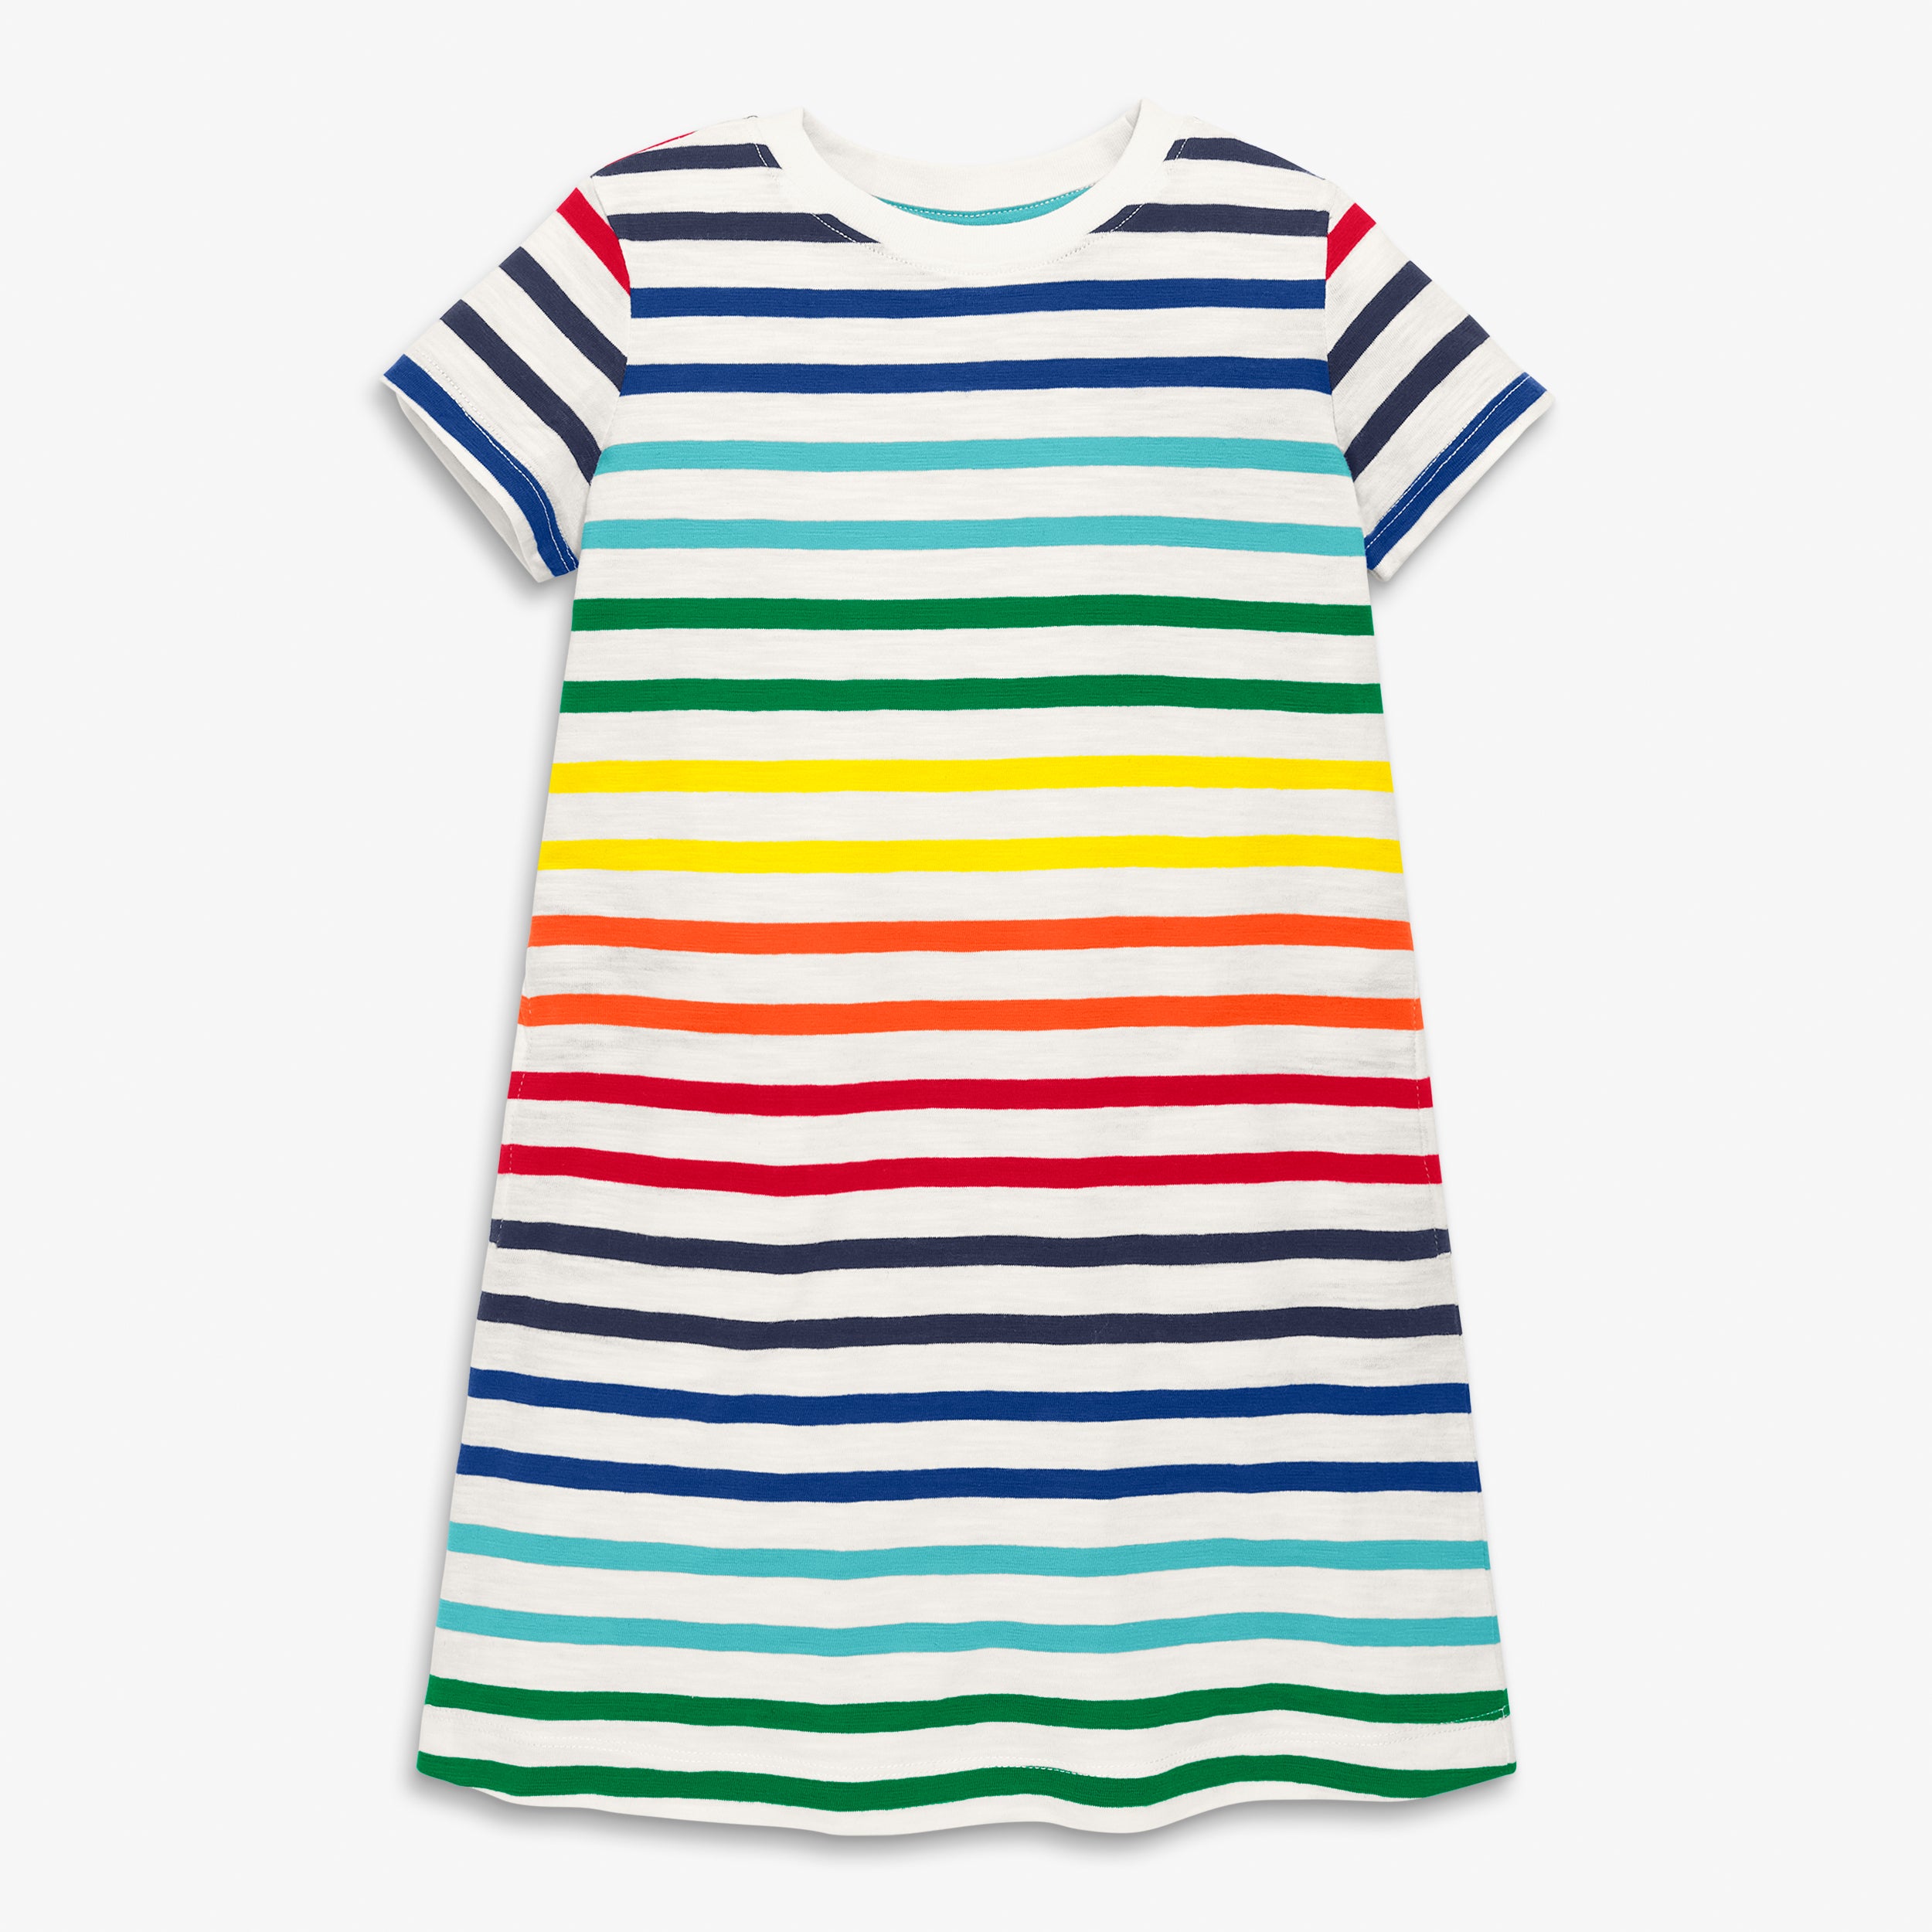 The Kids Stripe T-Shirt Dress - Kids ...